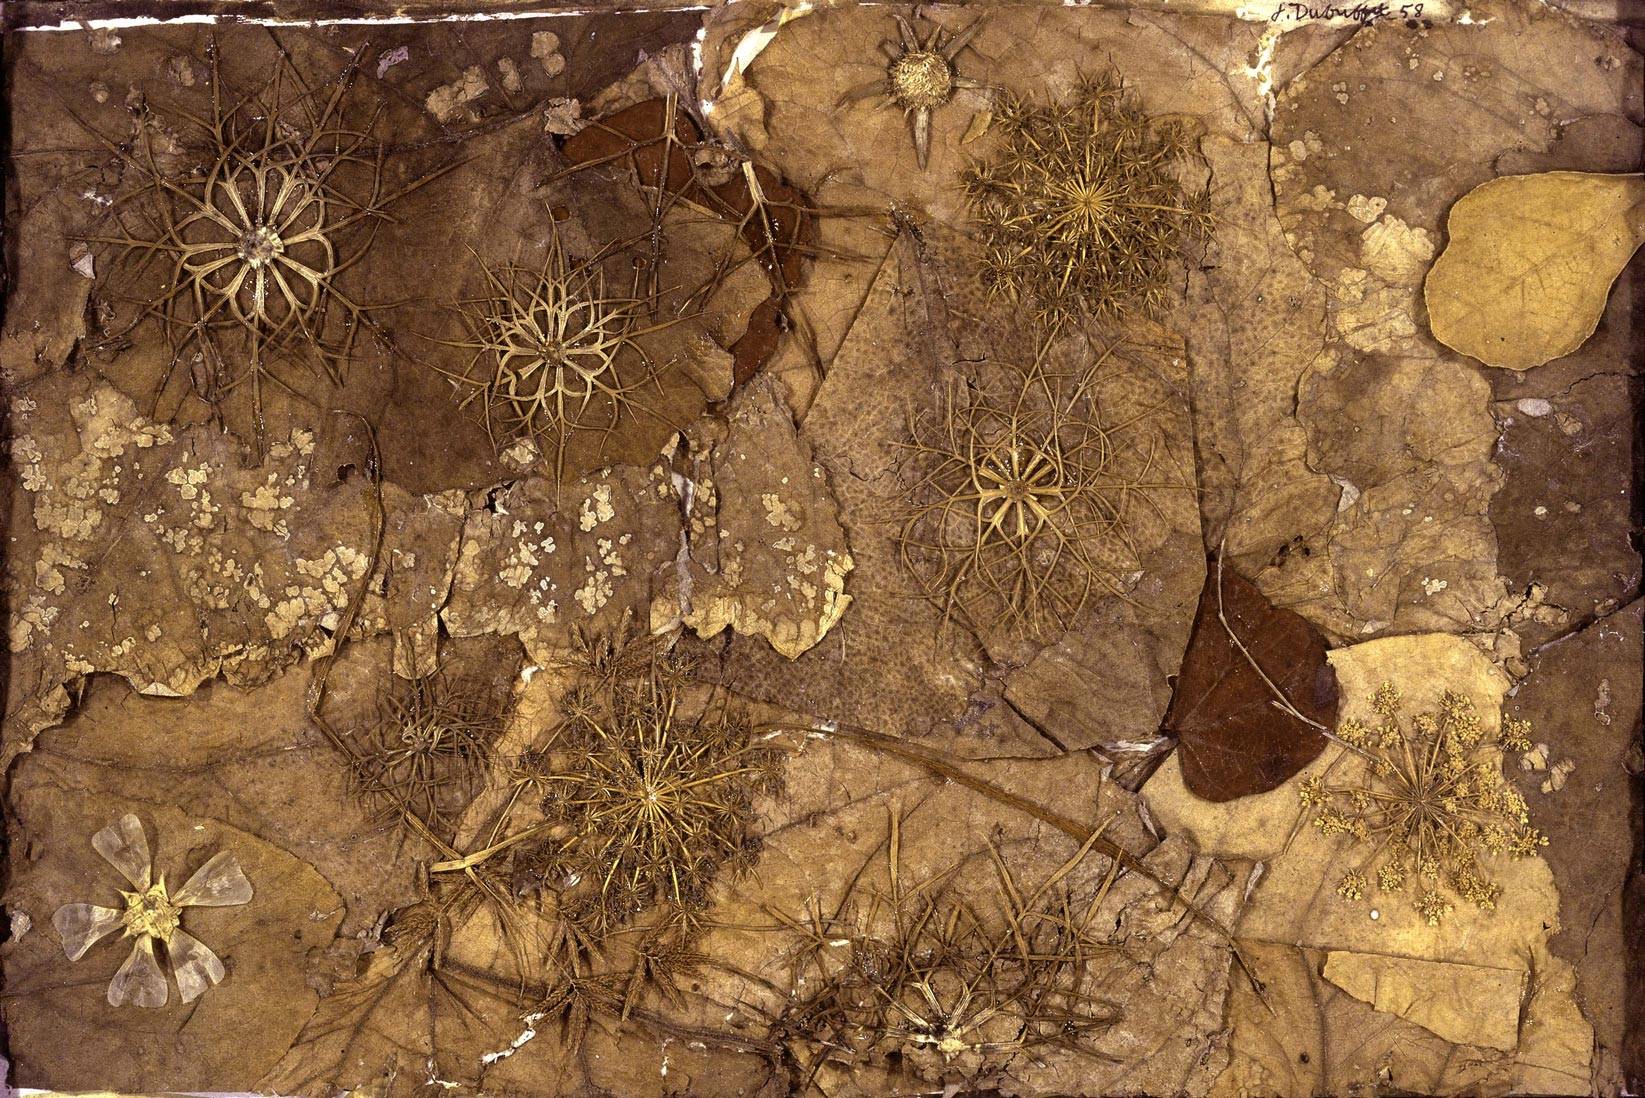 “Jardin au sol” de Jean Dubuffet, automne 1958.

Éléments botaniques, 24,5 x 37,5 cm
Collection Fondation Dubuffet, Paris
© Fondation Dubuffet/ADAGP, Paris, 2017